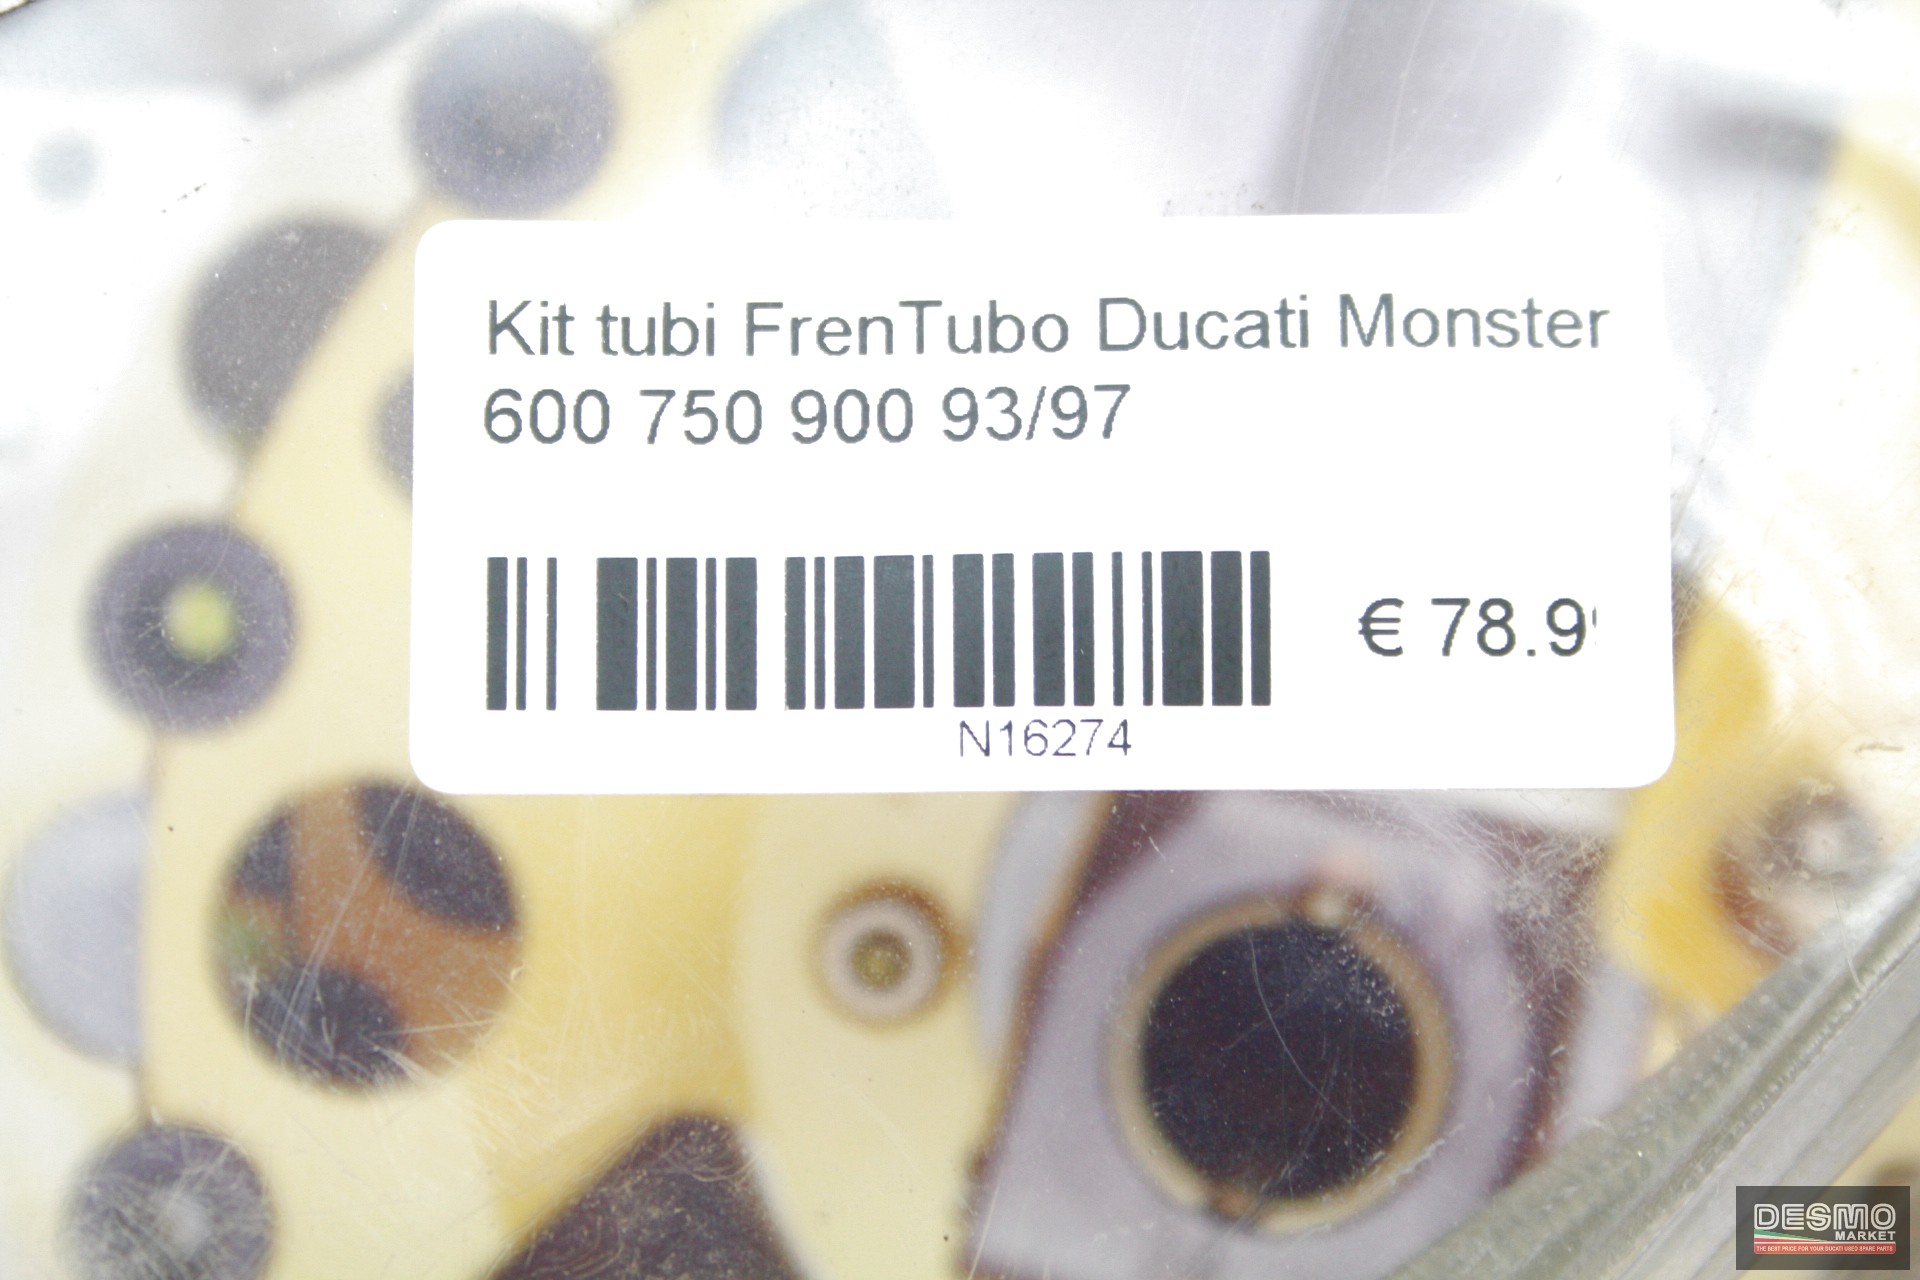 Kit tubi FrenTubo Ducati Monster 600 750 900 93/97